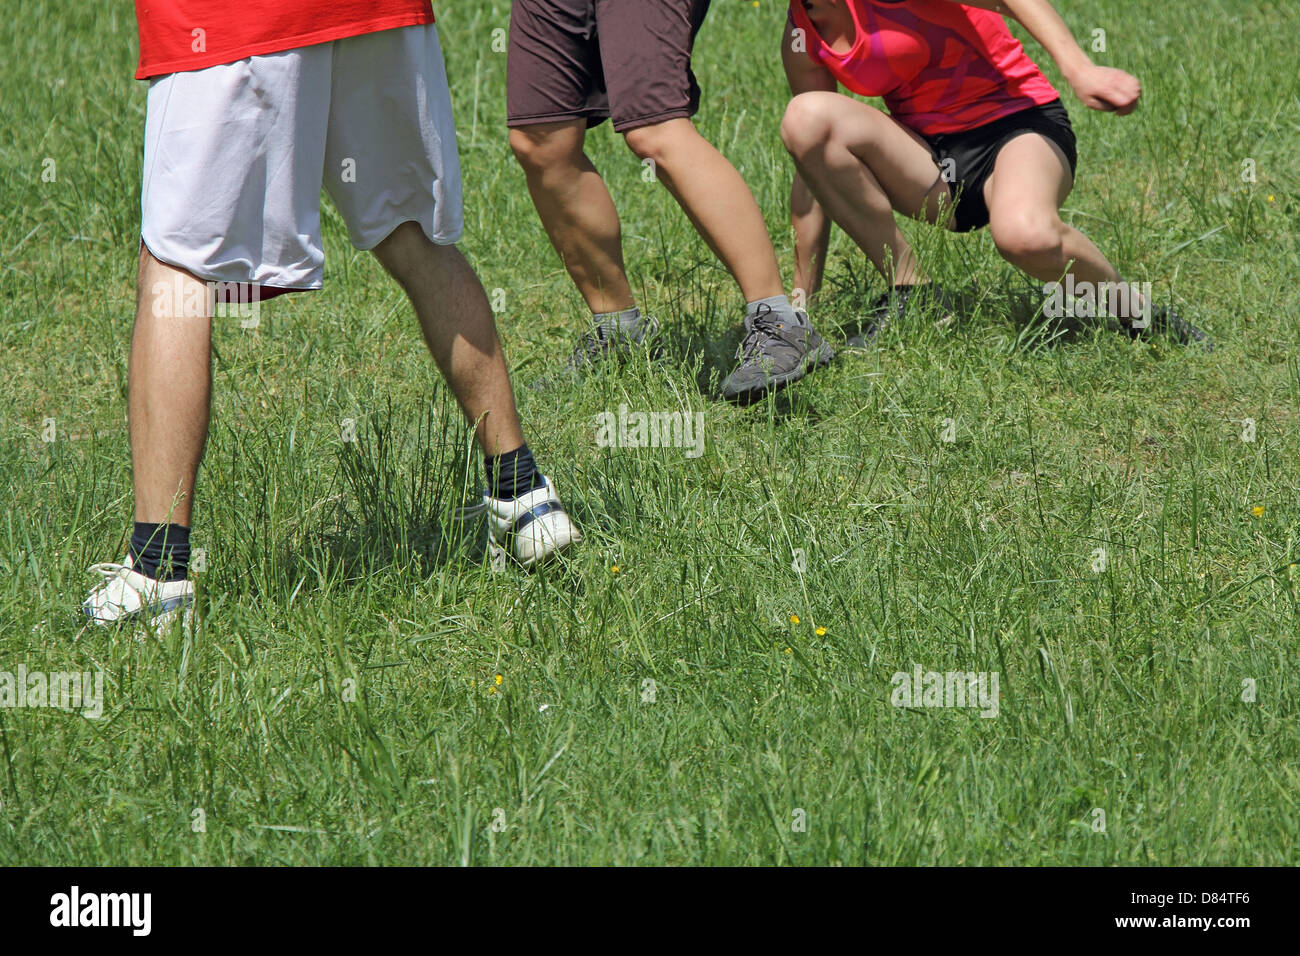 Jungen und Mädchen spielen in einer Wiese auf dem grünen Rasen Stockfoto